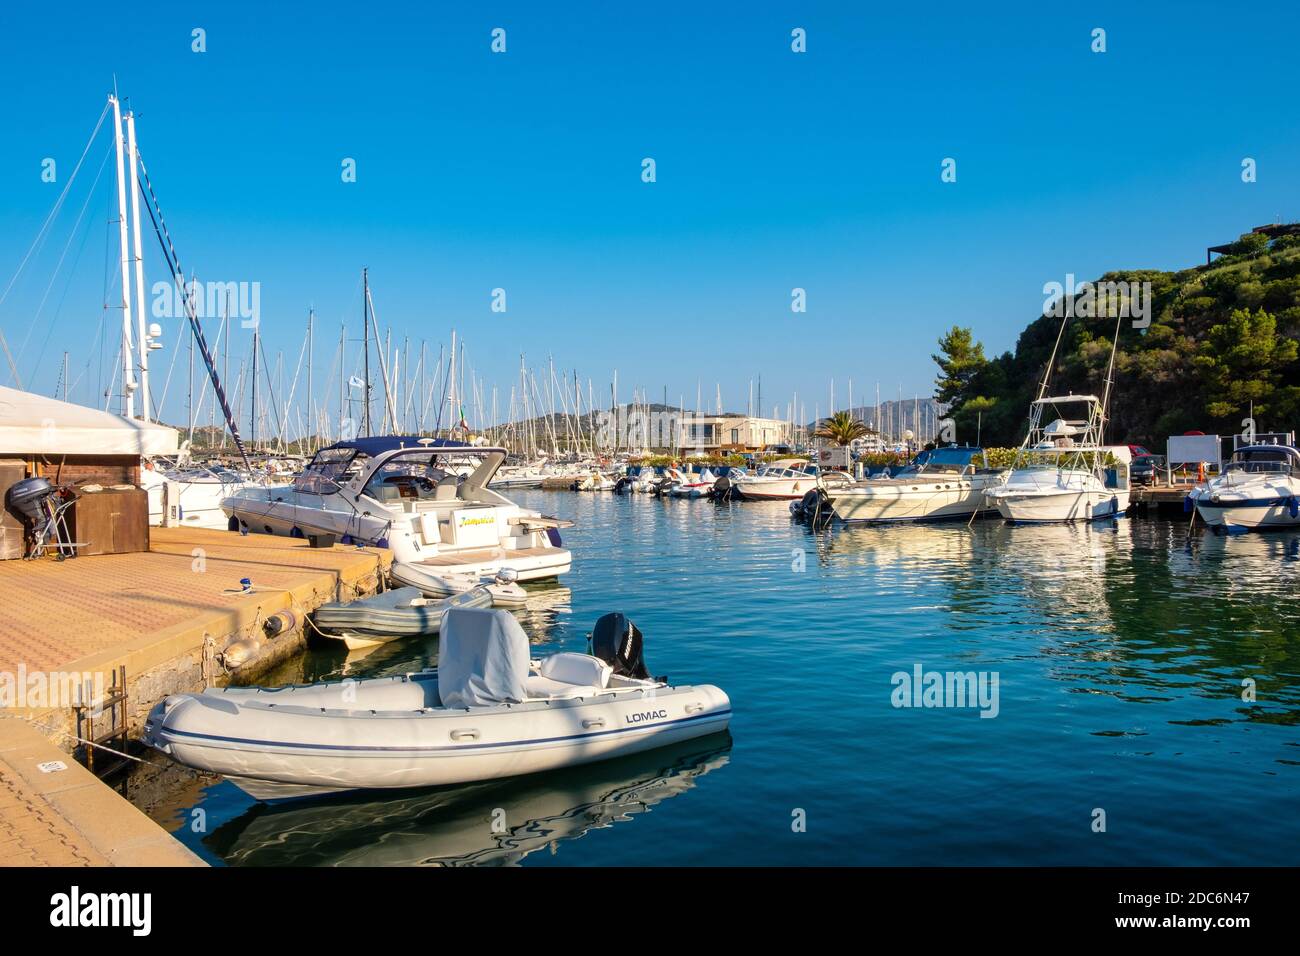 Marina di portisco immagini e fotografie stock ad alta risoluzione - Alamy